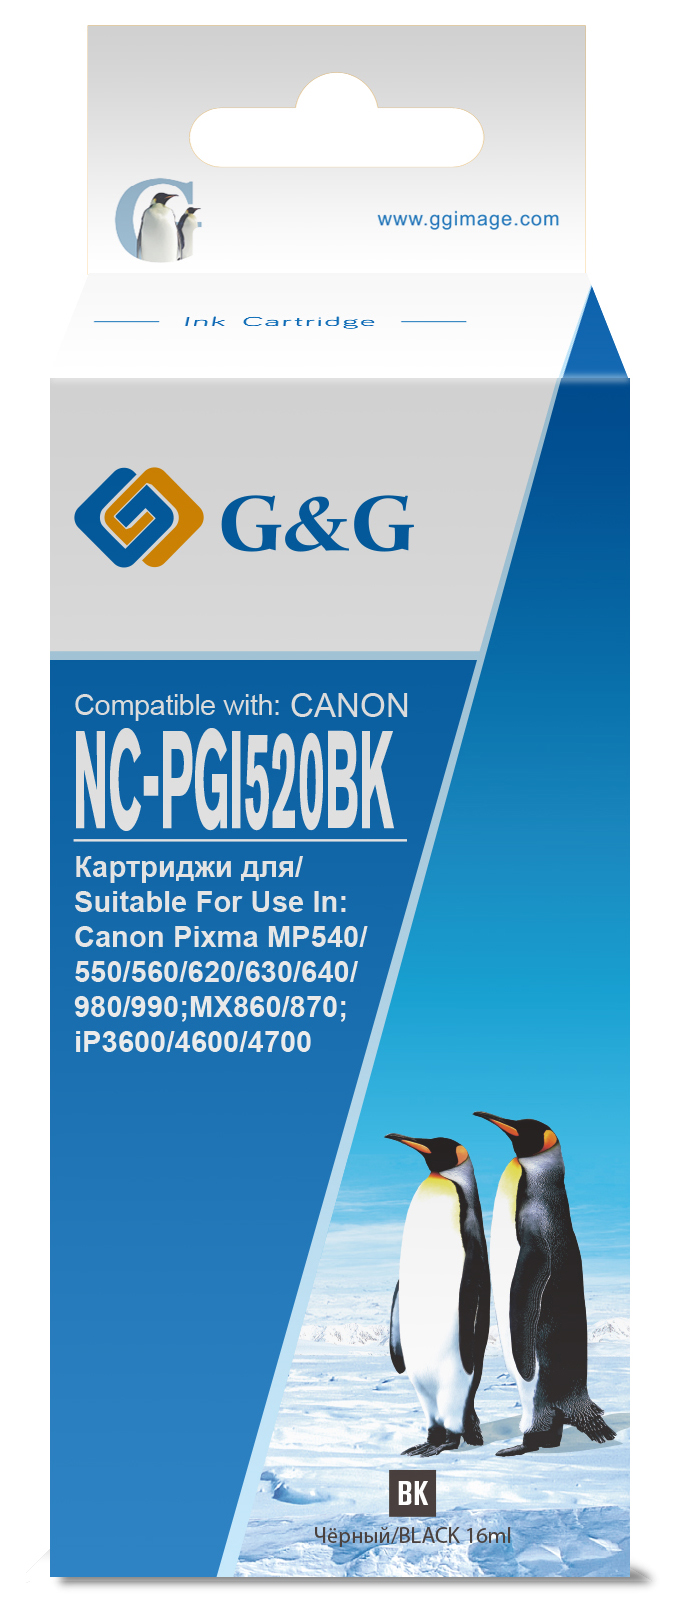 nc-pgi520bk_1